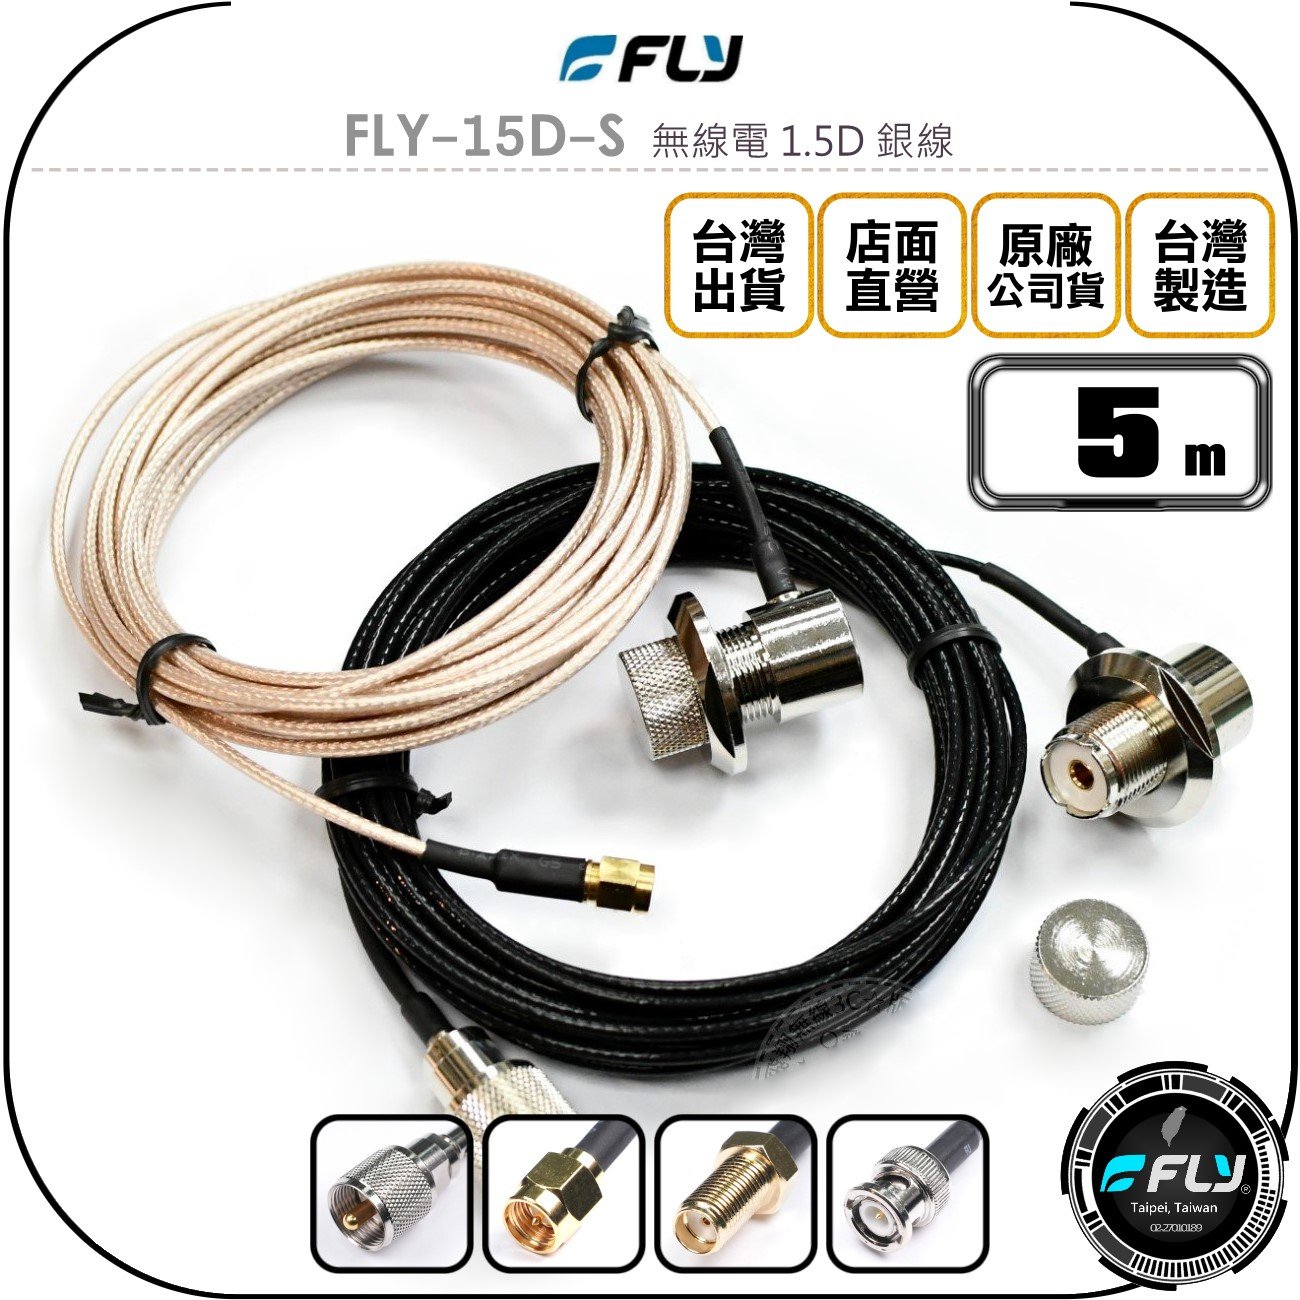 《飛翔無線3C》FLY FLY-15D-S 無線電 1.5D 銀線 5m◉公司貨◉訊號線◉對講機收發◉車機外接傳輸